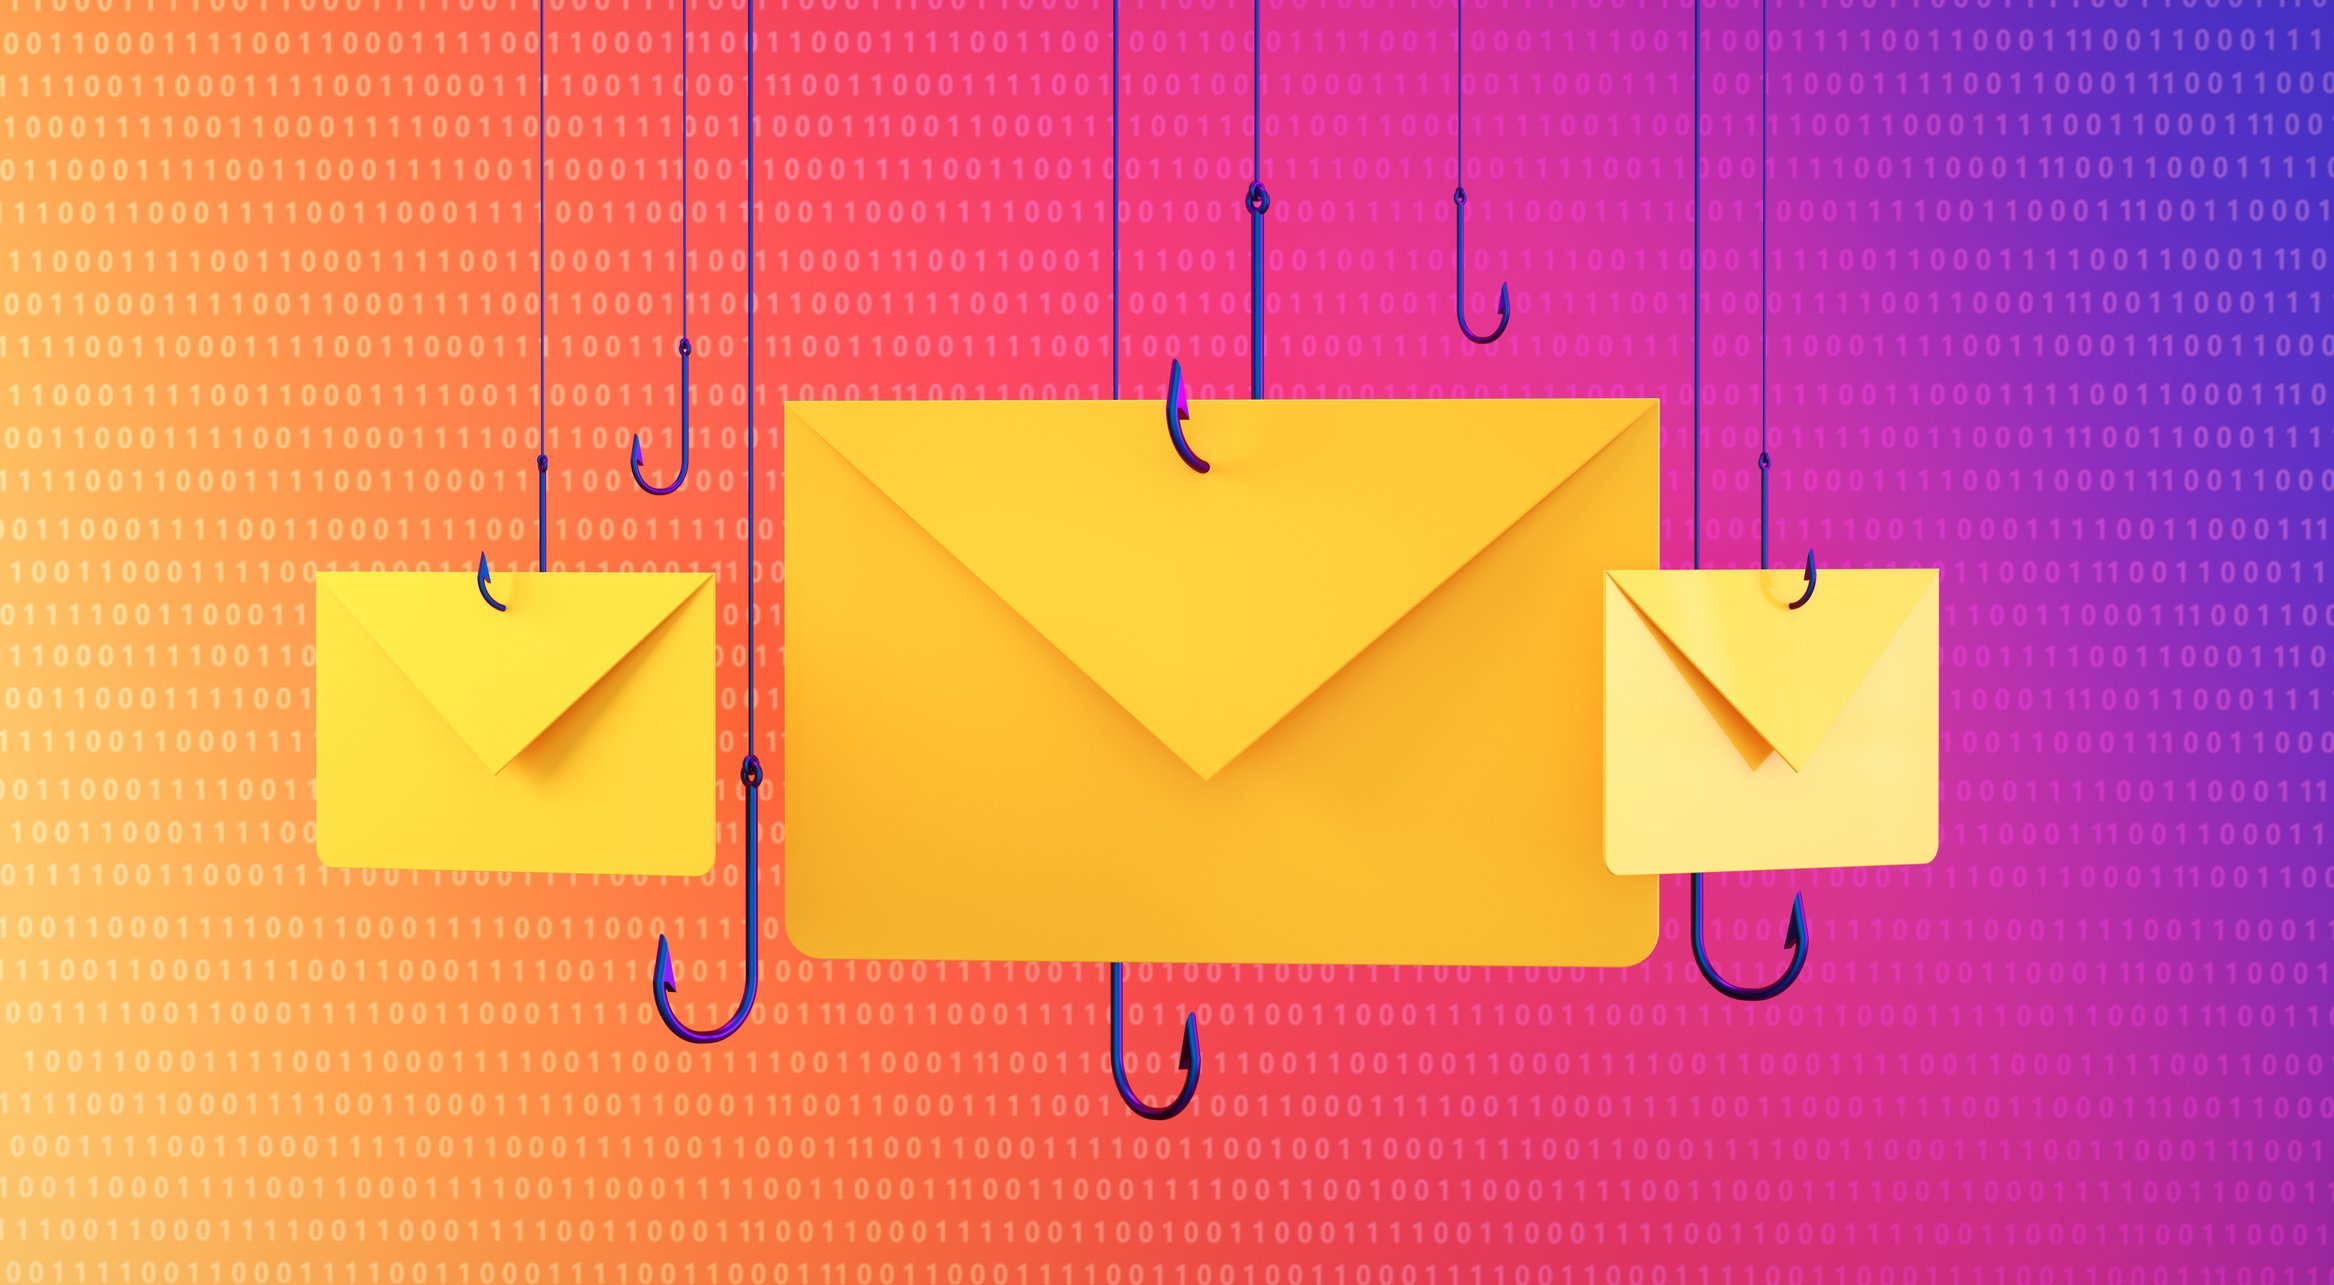 ilustración de sobres colgados en el aire asegurados con anzuelos para sugerir un ataque de phishing basado en correo electrónico